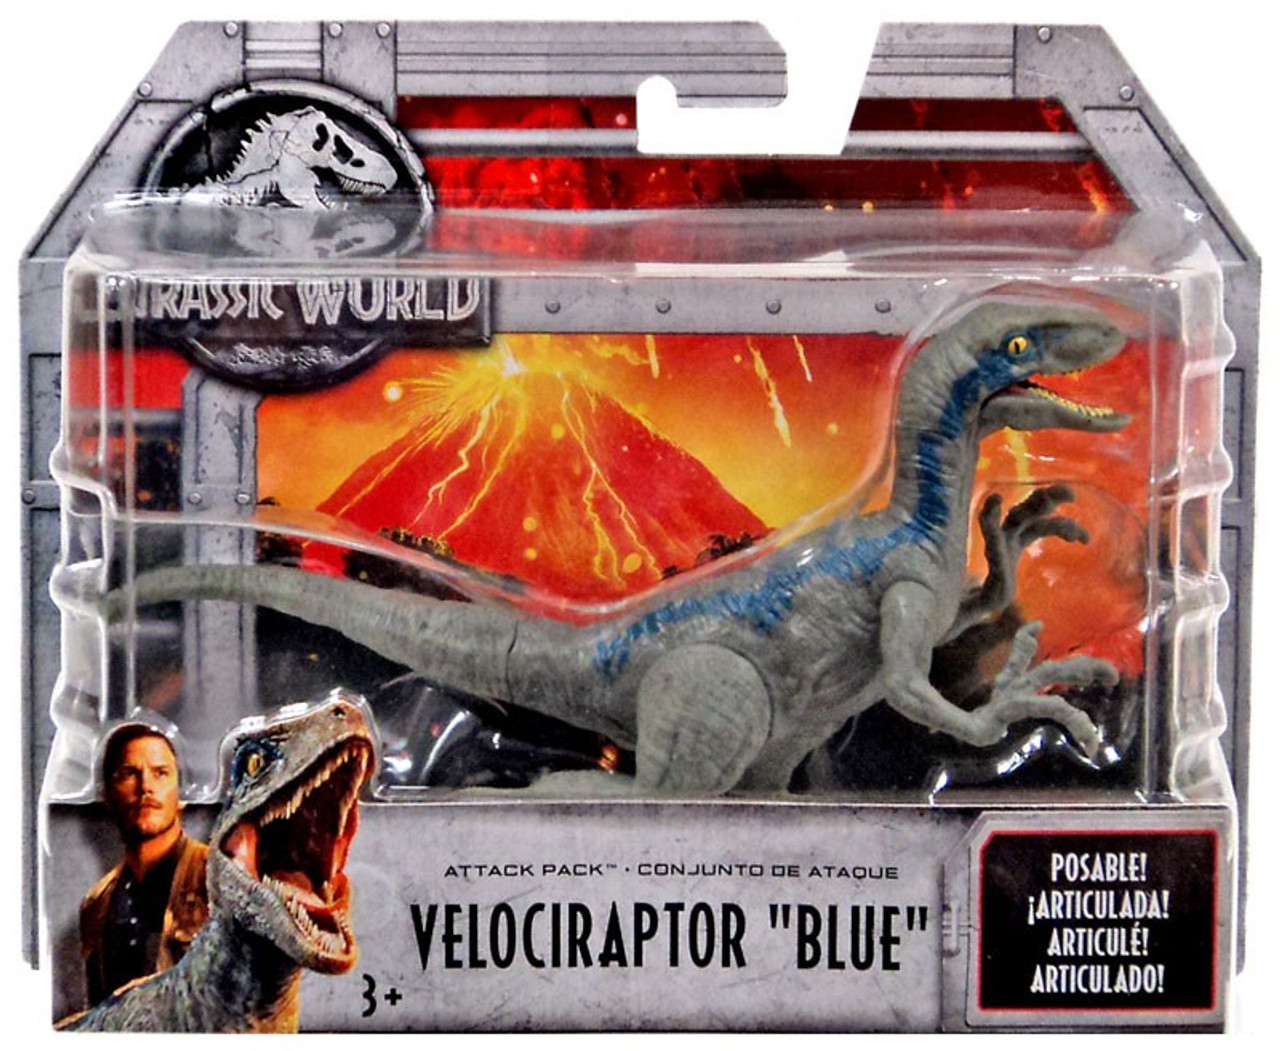 Jurassic World Fallen Kingdom Attack Pack Velociraptor Blue Action Figure Mattel Toywiz 